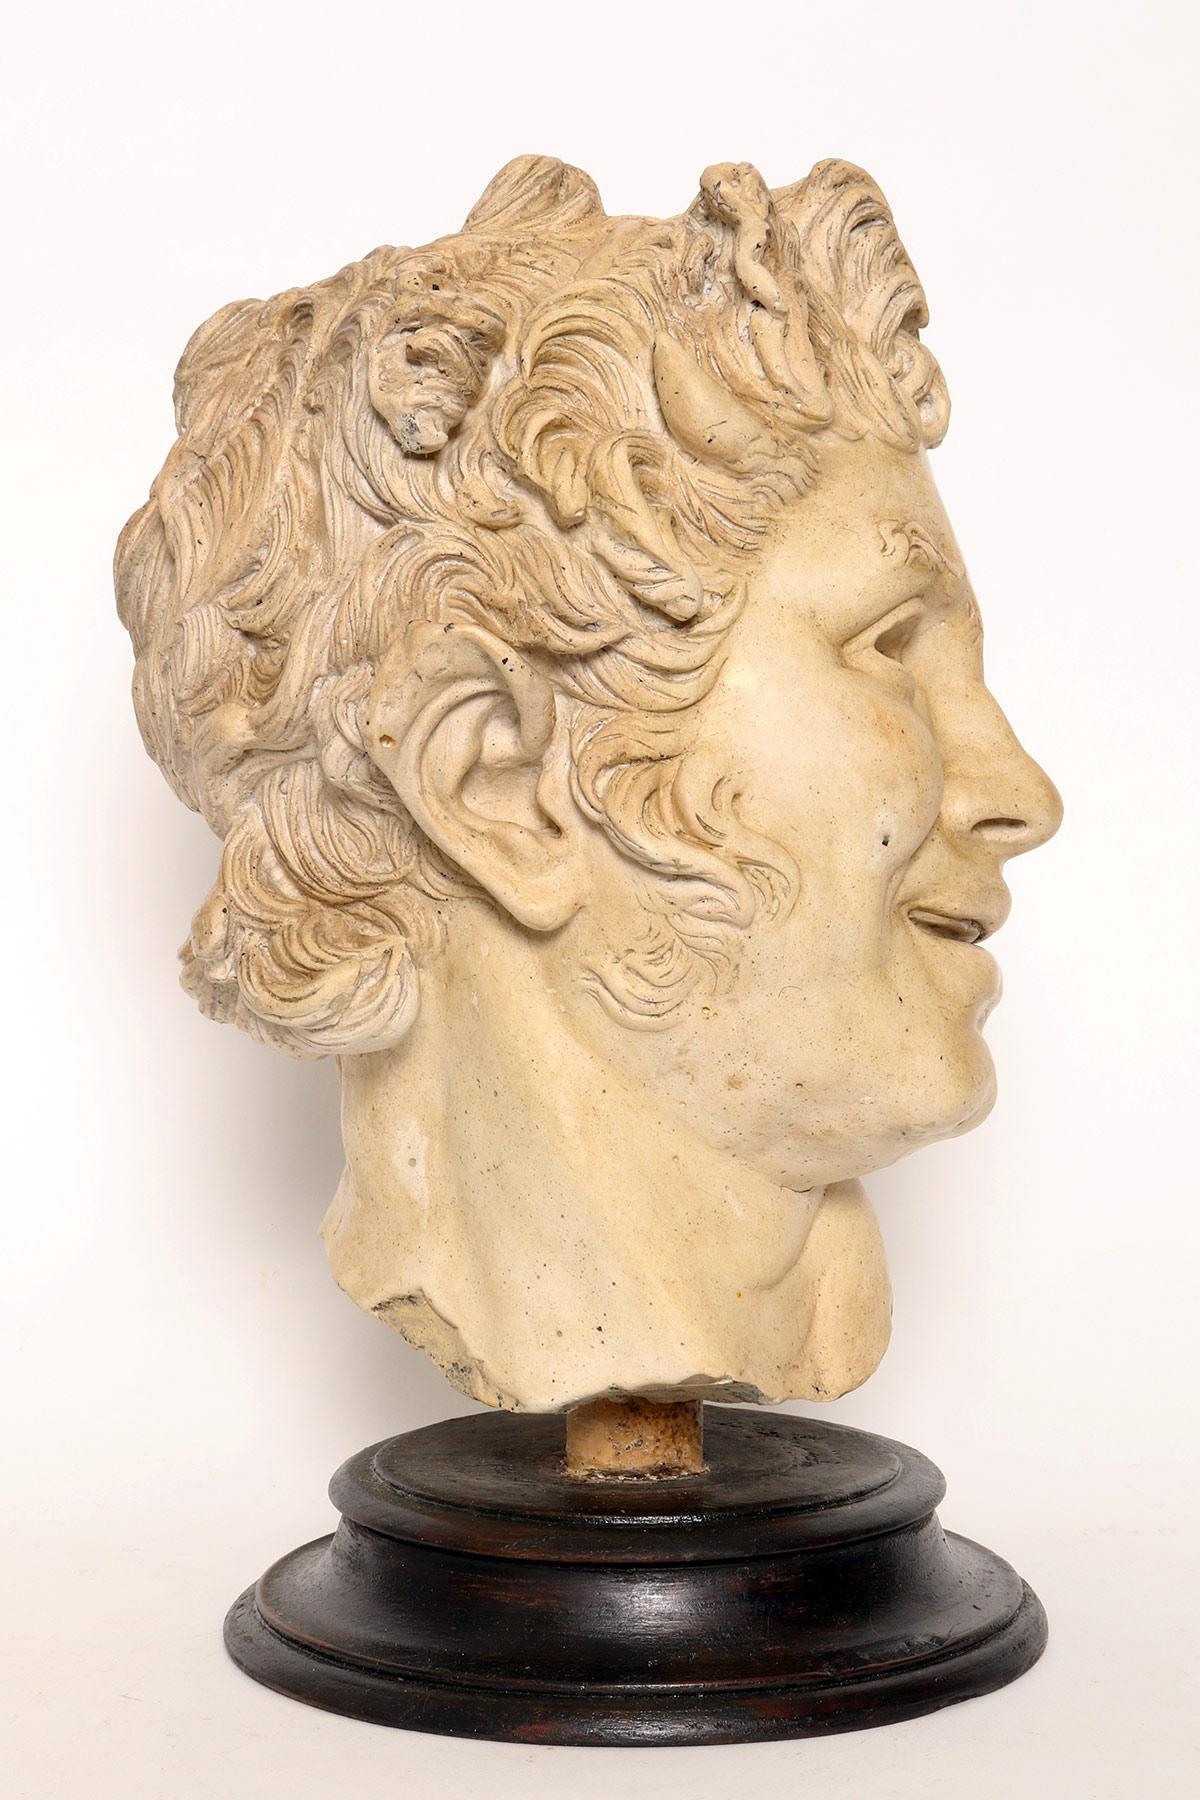 Über dem bemalten Holzsockel befindet sich der Kreideabdruck von  der junge Kopf von Furetti Centaur. Die Originalskulptur befindet sich in den Musei Capitolini in Rom. Die Skulptur wurde von 2 türkischen Künstlern geschaffen: Arista und Papias. Sie